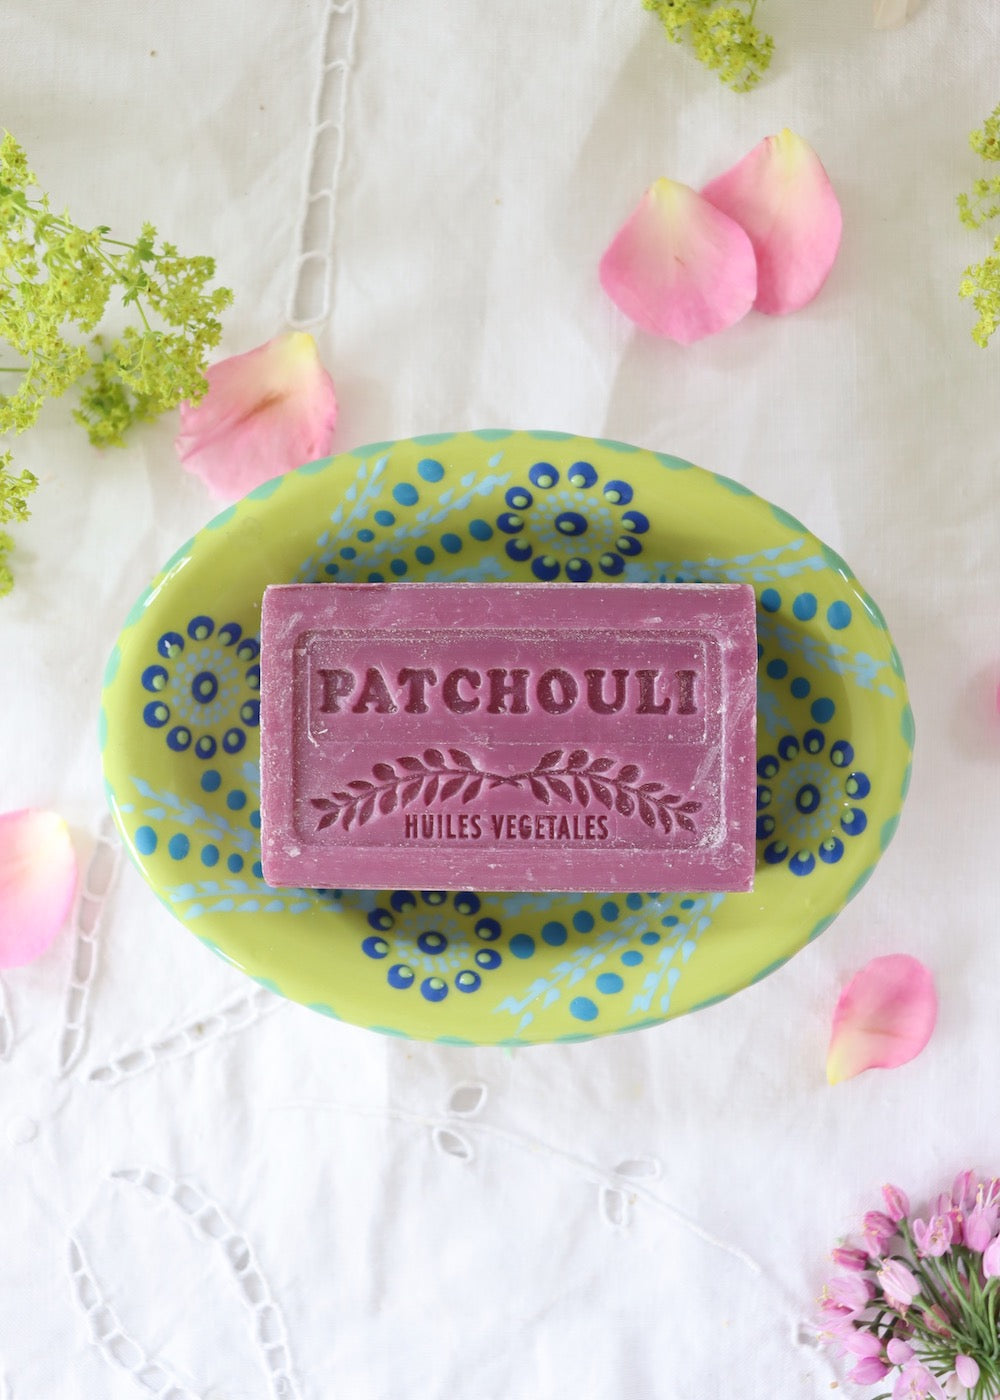 Marseille Soap - Patchouli